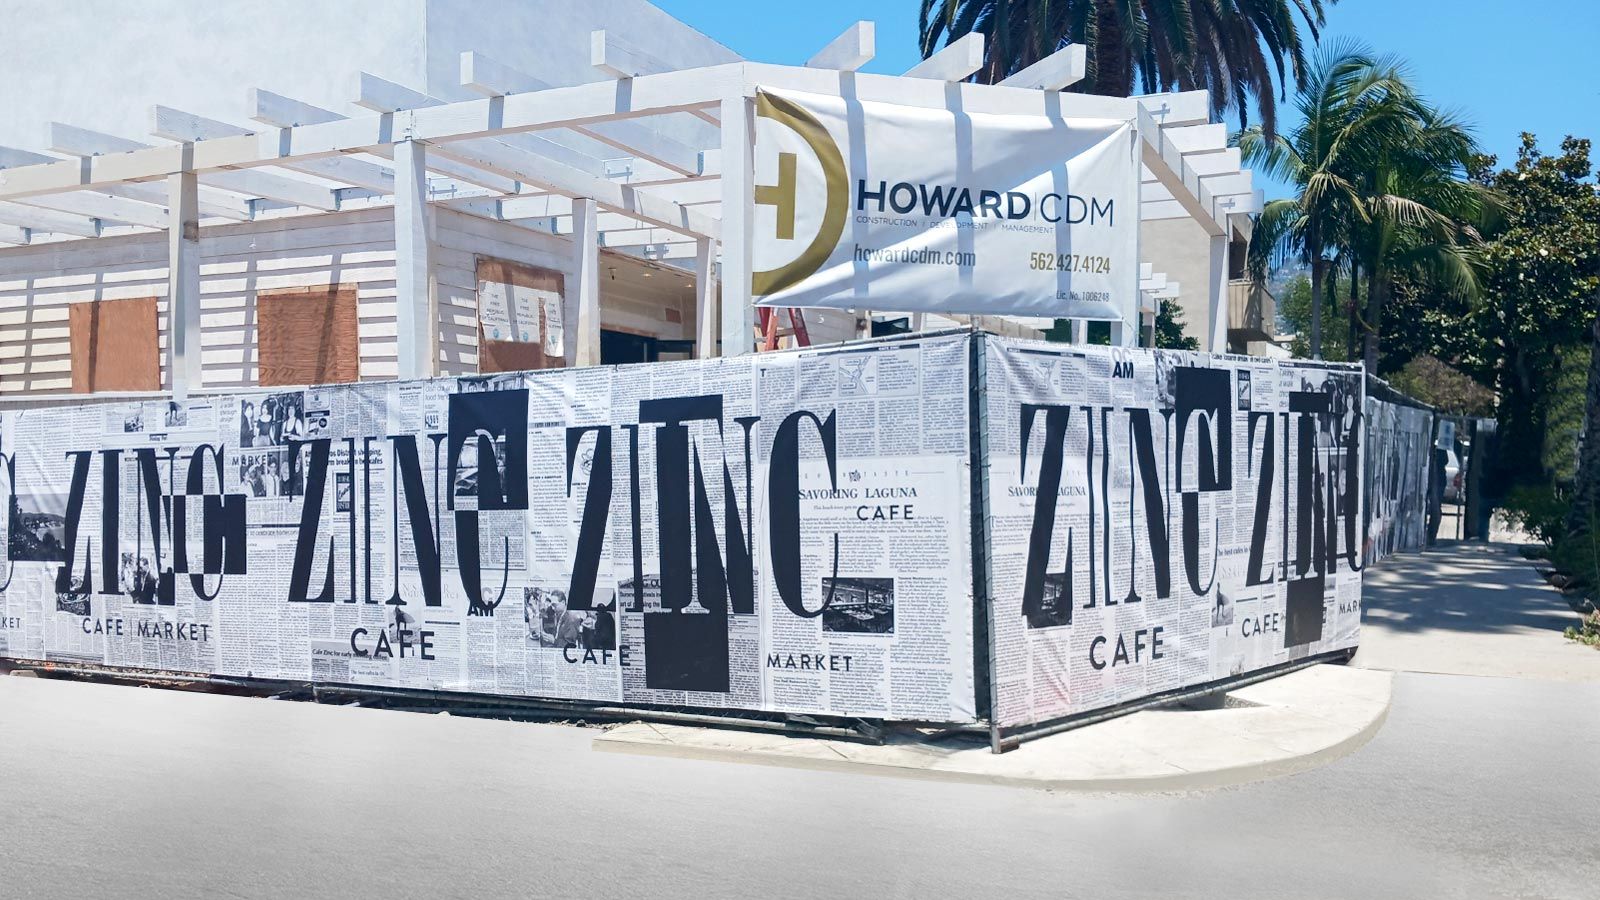 Zinc Cafe vinyl banners installed outdoor